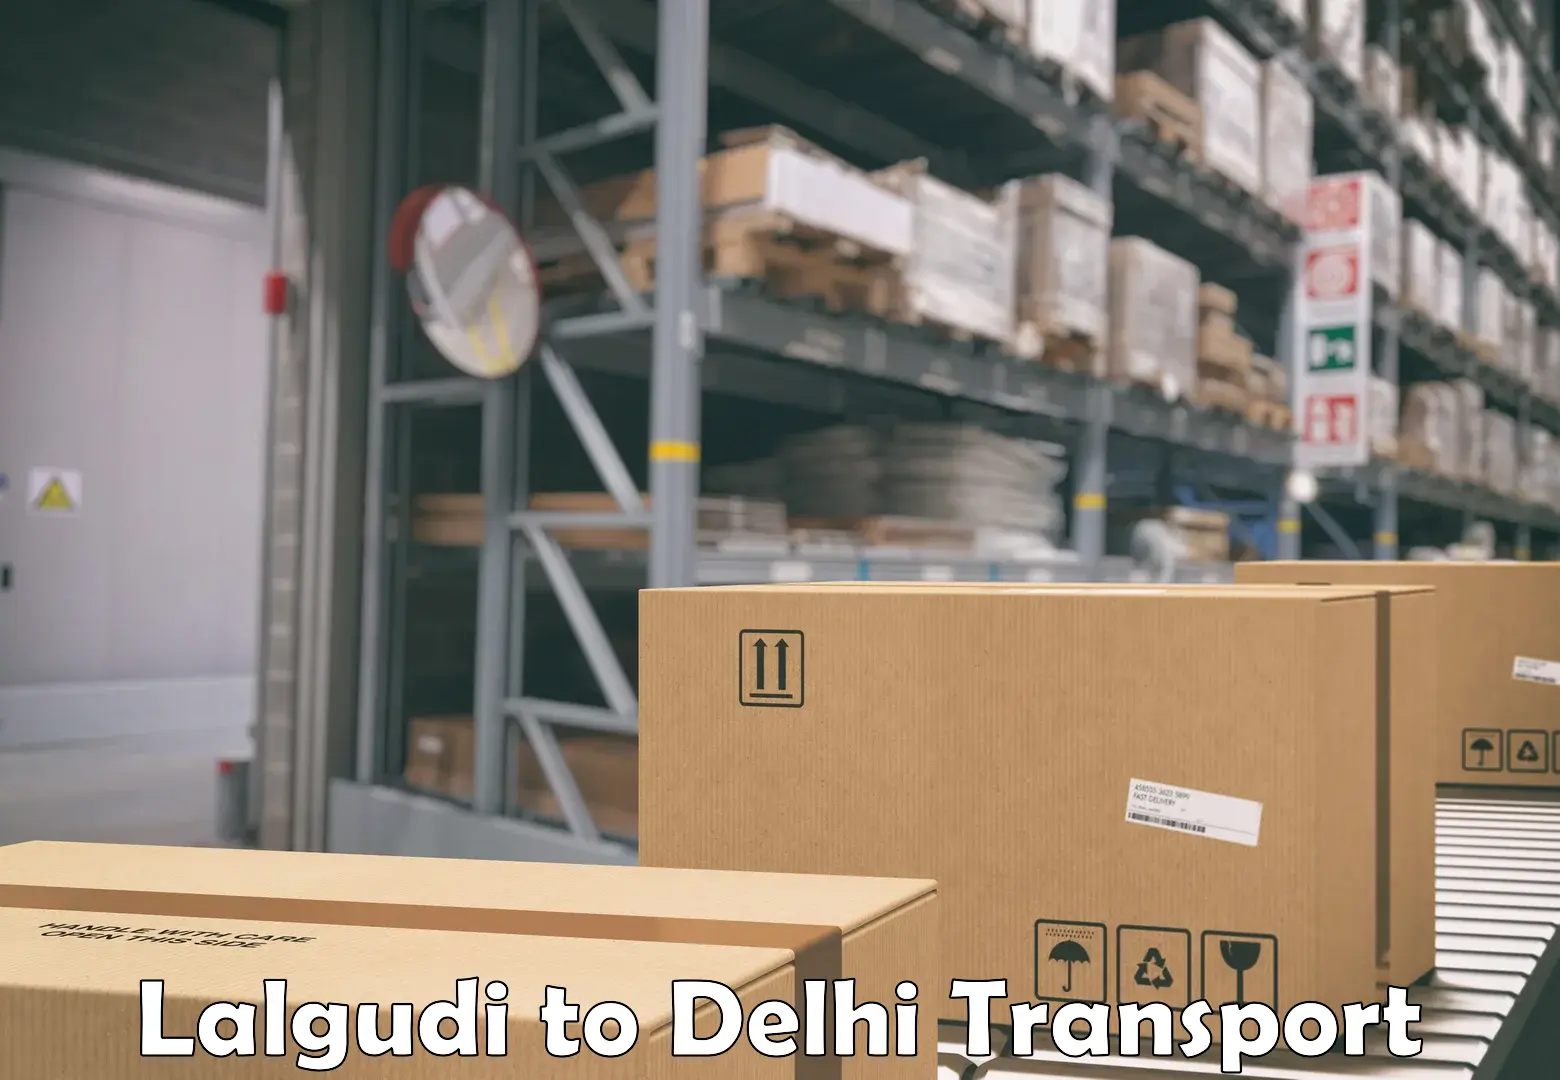 Commercial transport service Lalgudi to Delhi